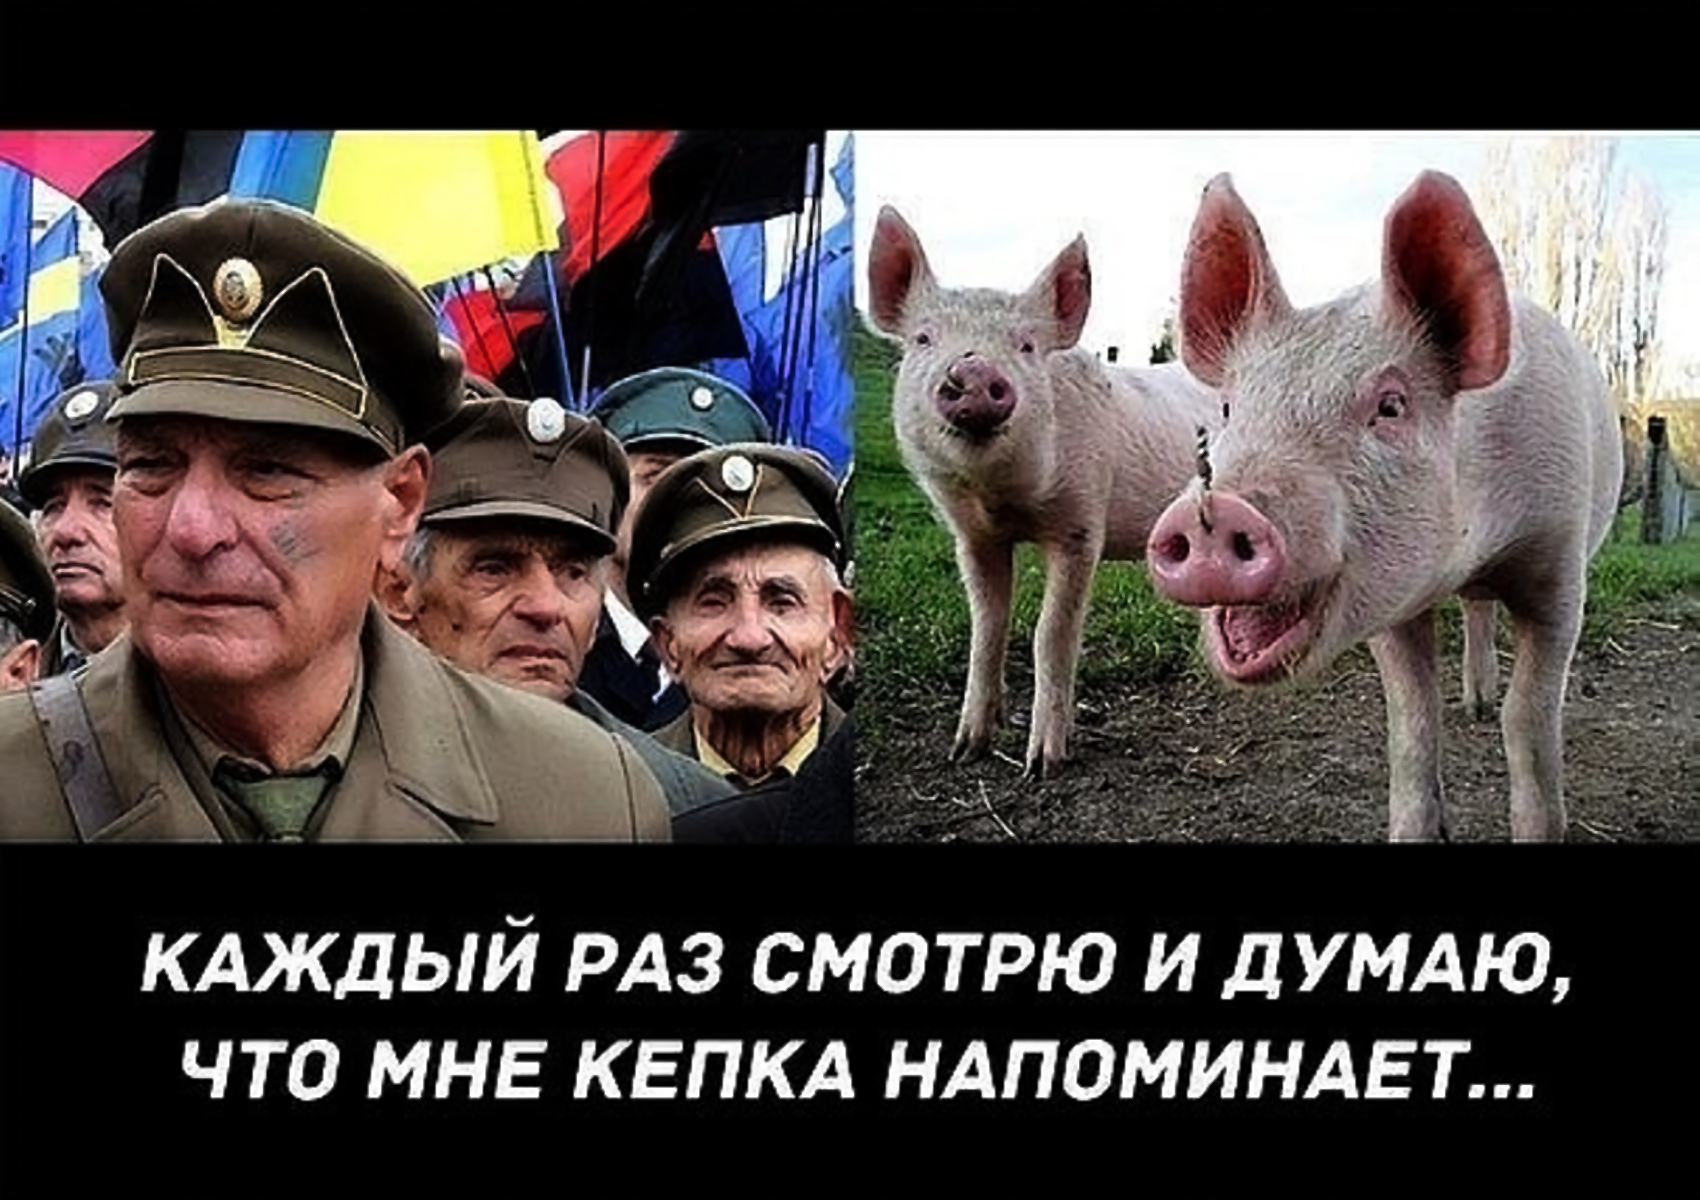 Европа свинья. Приколы про Хохлов. Украинские войска свиньи.